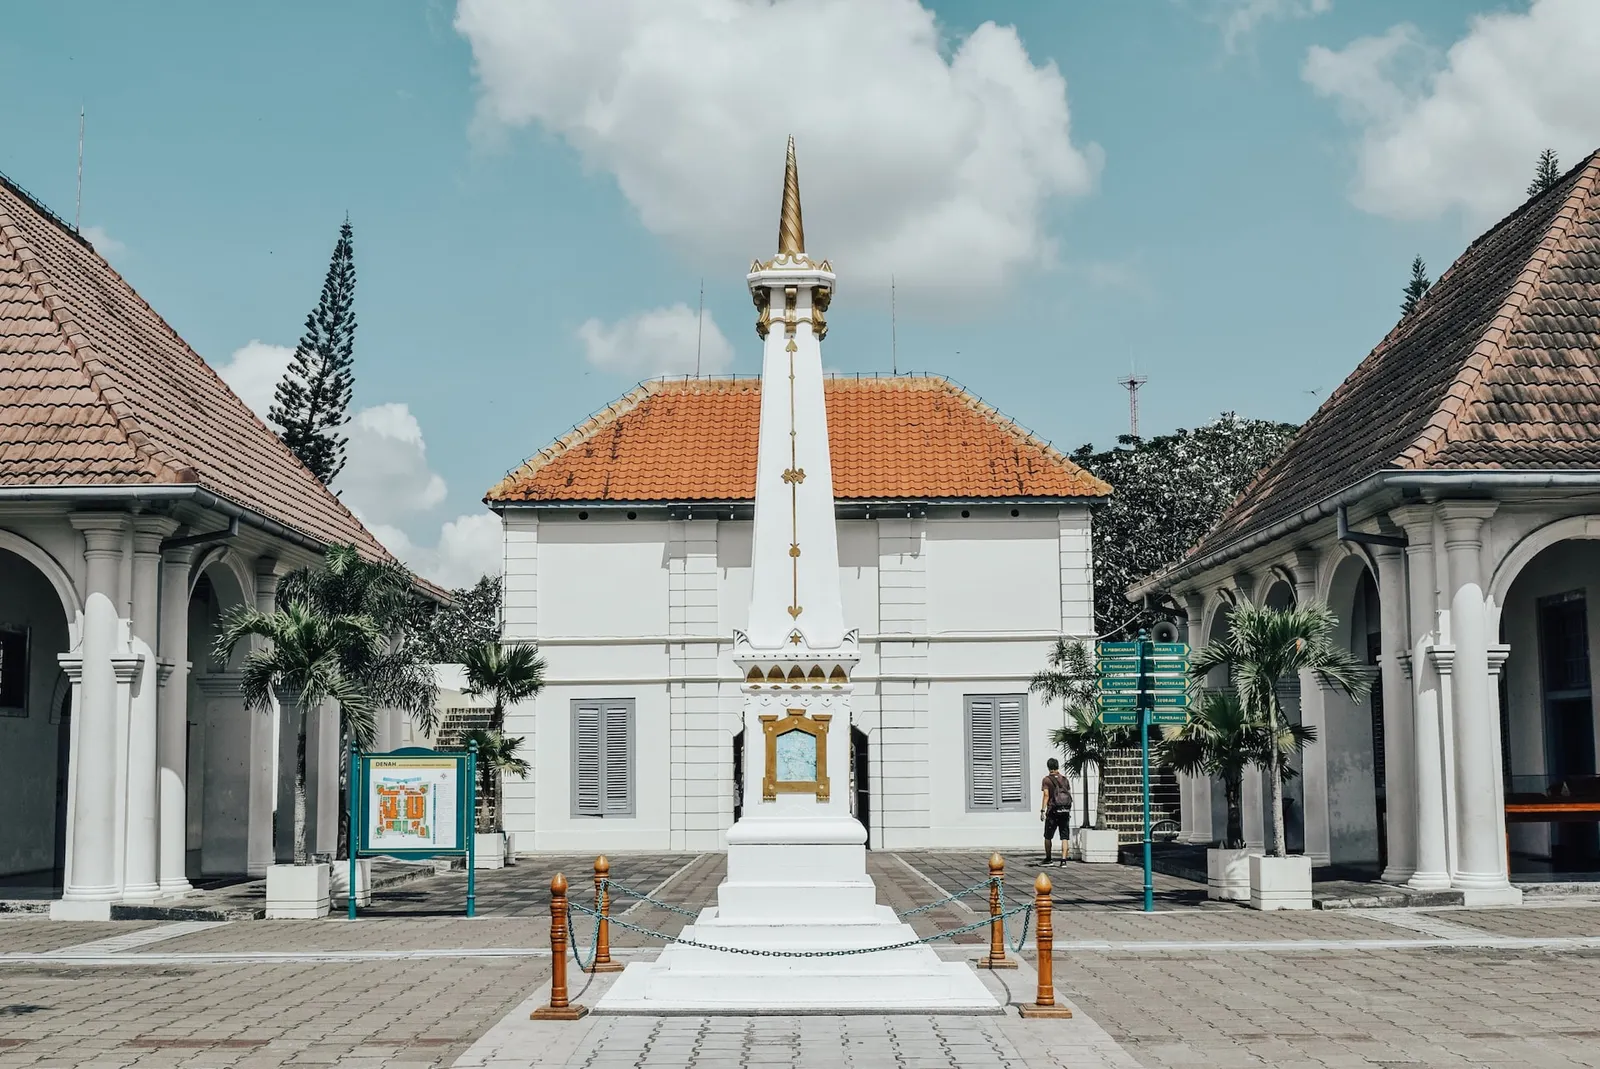 5 Wisata Horor di Yogyakarta, Salah Satunya Pernah Jadi Lokasi Syuting